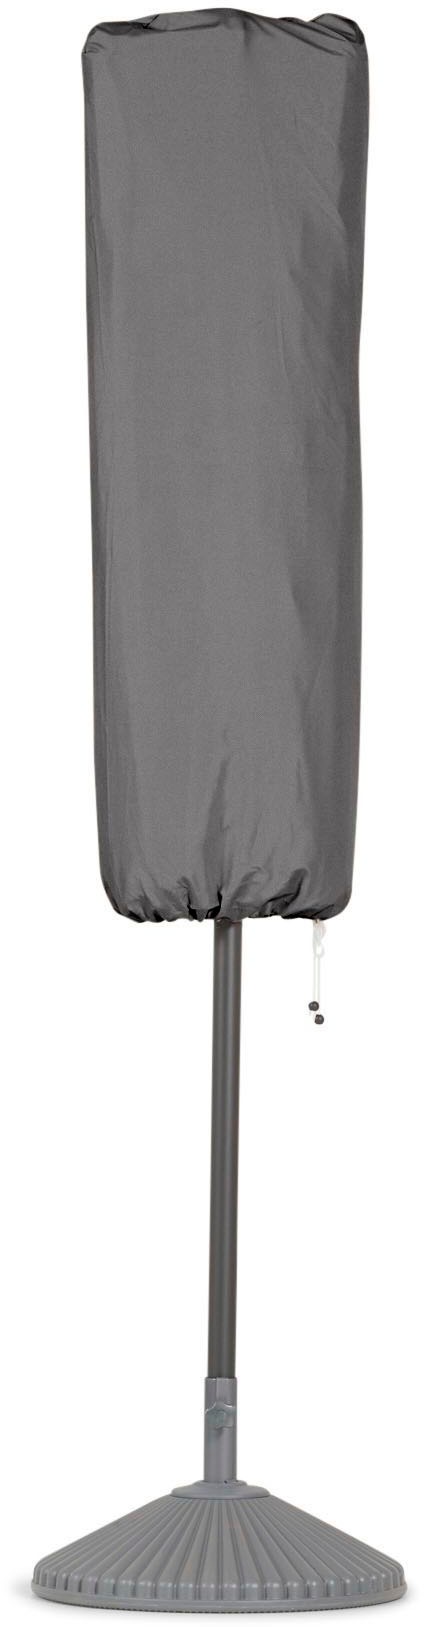 Sonnenschirm-Schutzhülle, für Oval-Schirm 4,7x2,7 m "DAS ORIGINAL", Anthrazit